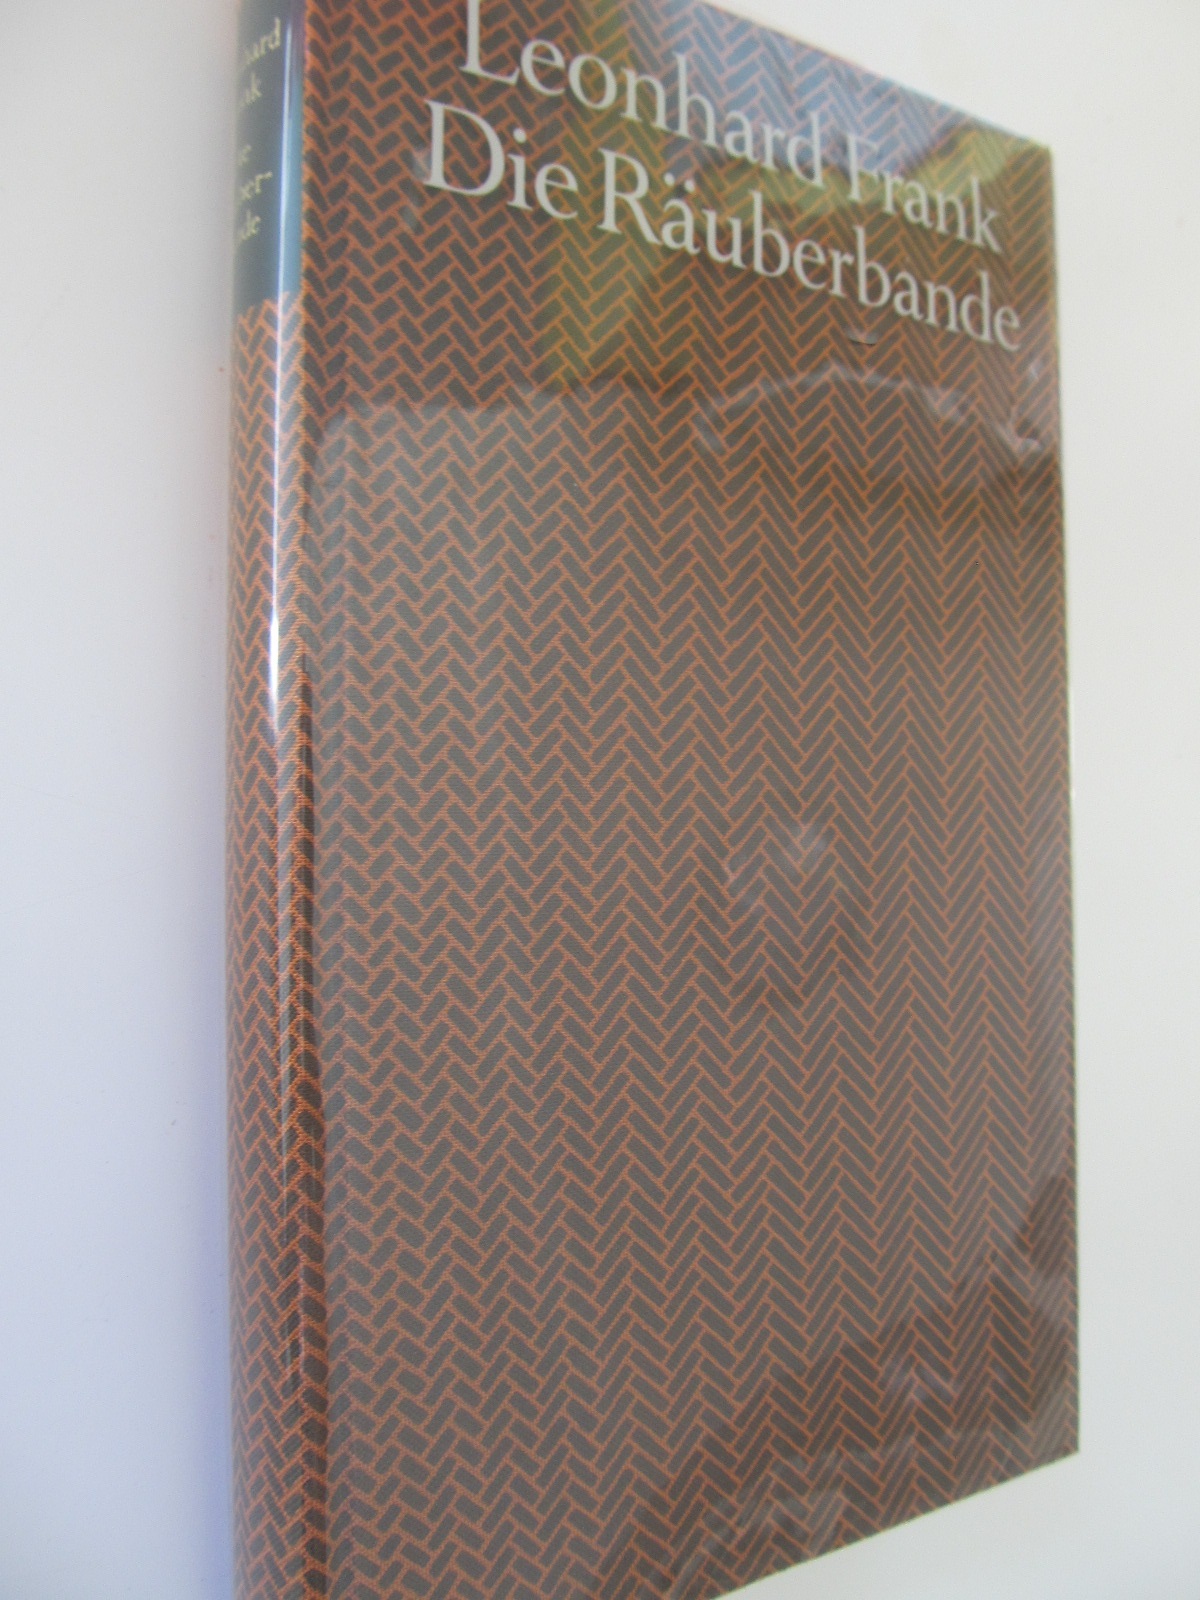 Die Rauberbande - Leonhard Frank | Detalii carte